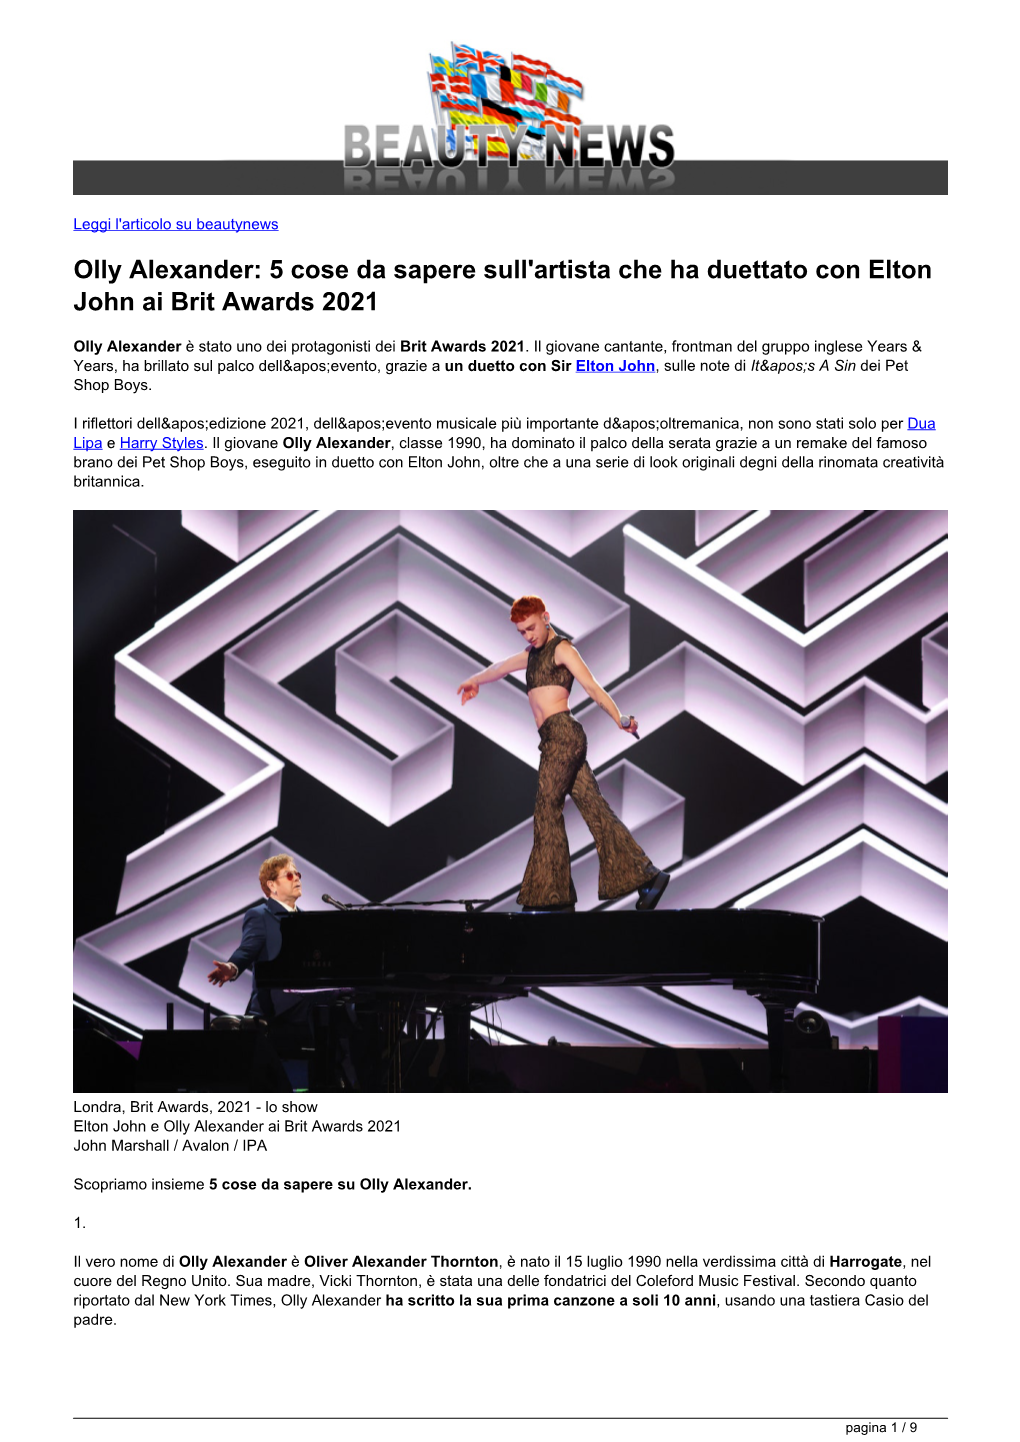 Olly Alexander: 5 Cose Da Sapere Sull'artista Che Ha Duettato Con Elton John Ai Brit Awards 2021